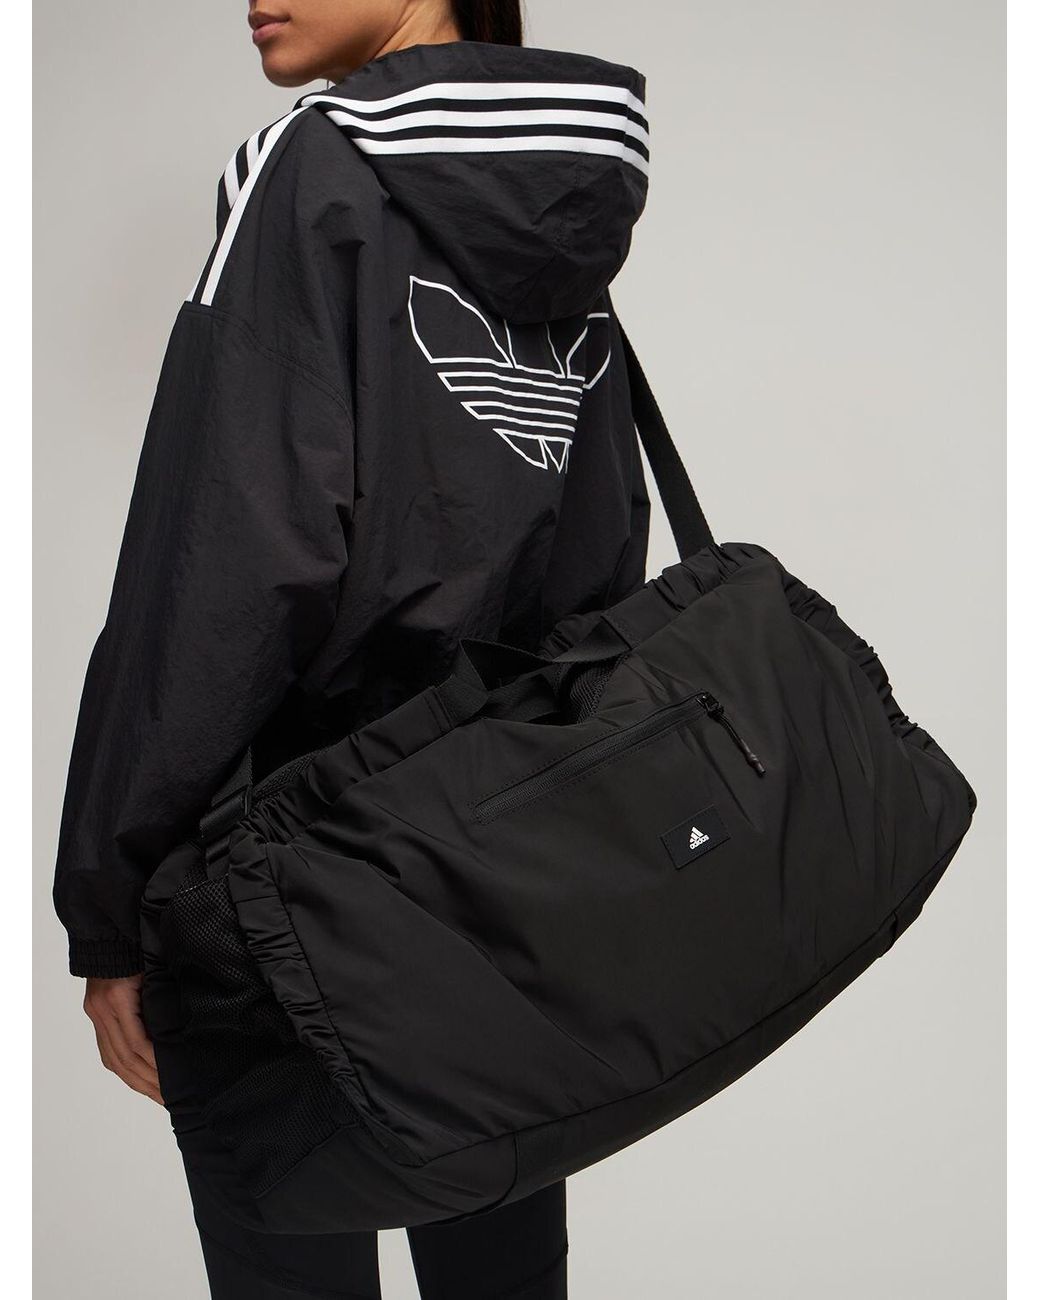 adidas Originals Yoga Studio Earth Duffle Bag in Black